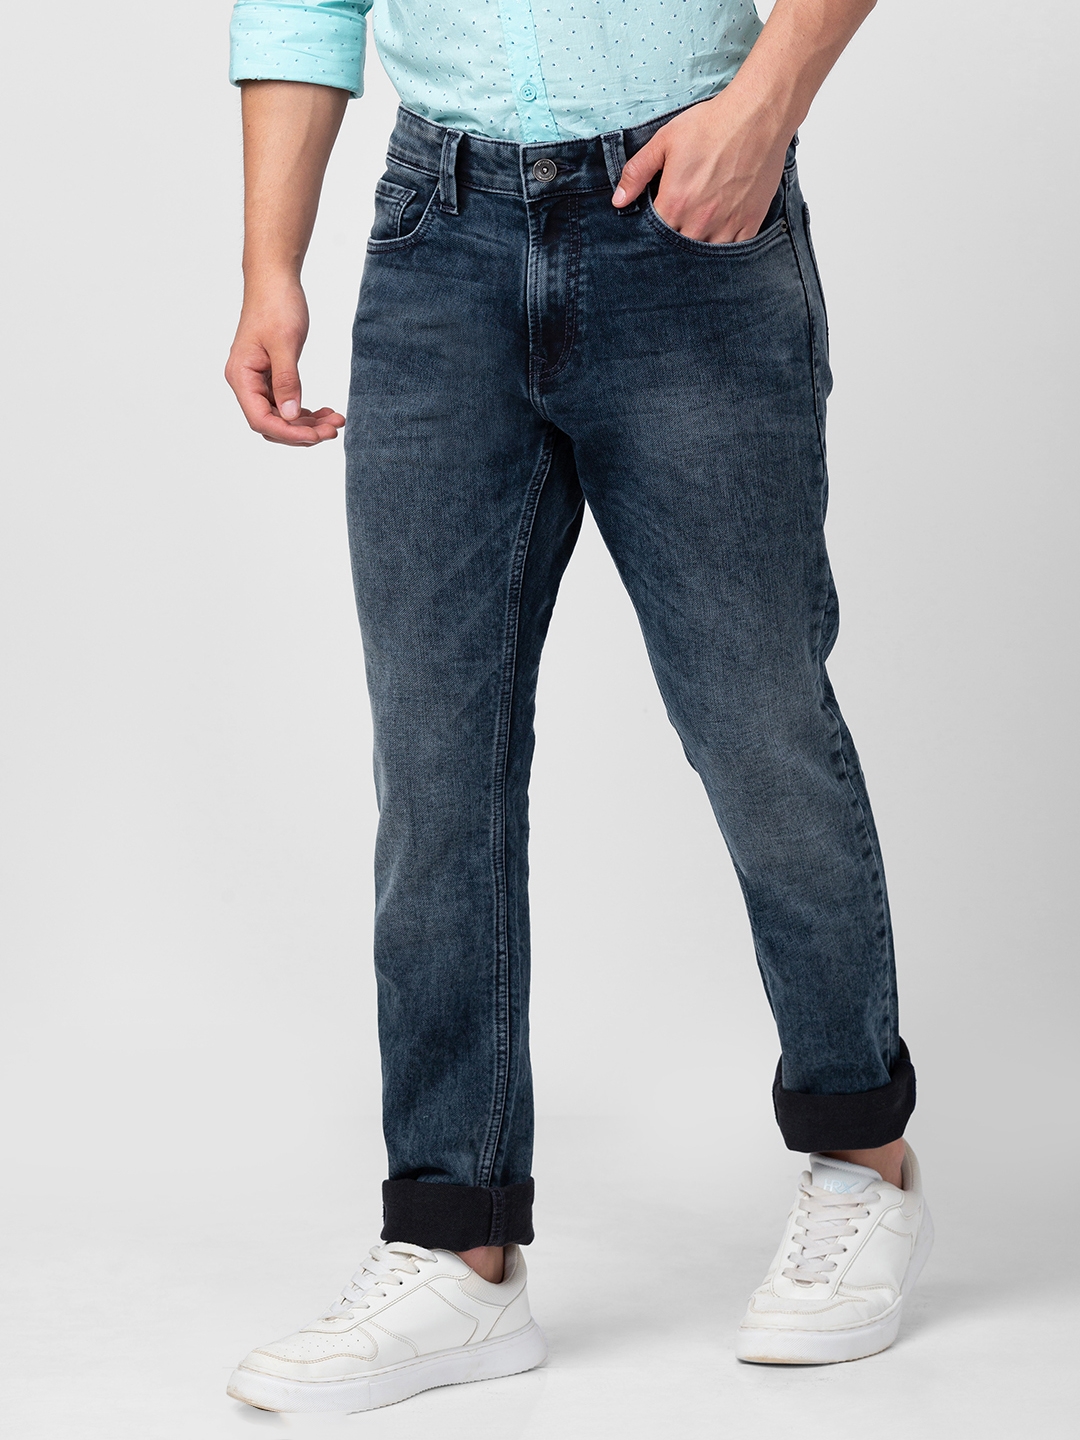 spykar | Men's Blue Cotton Solid Jeans 3